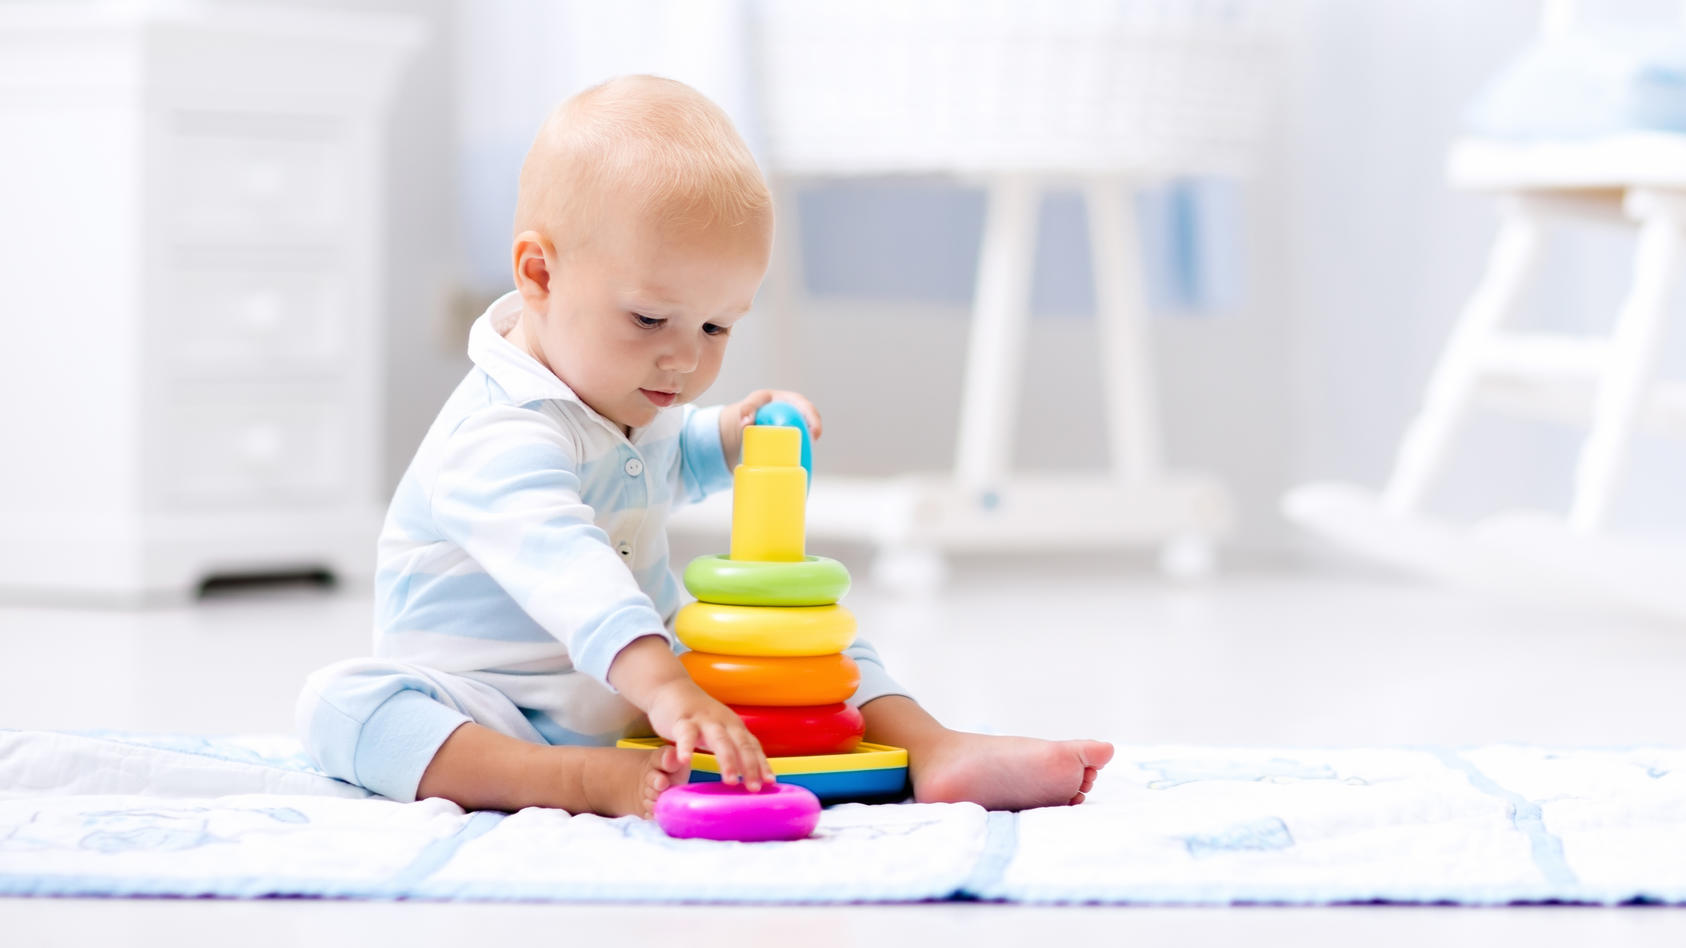 Im 7. Monat können Babys bereits alleine sitzen und stärken zunehmend ihre motorischen, geistigen und emotionalen Fähigkeiten.